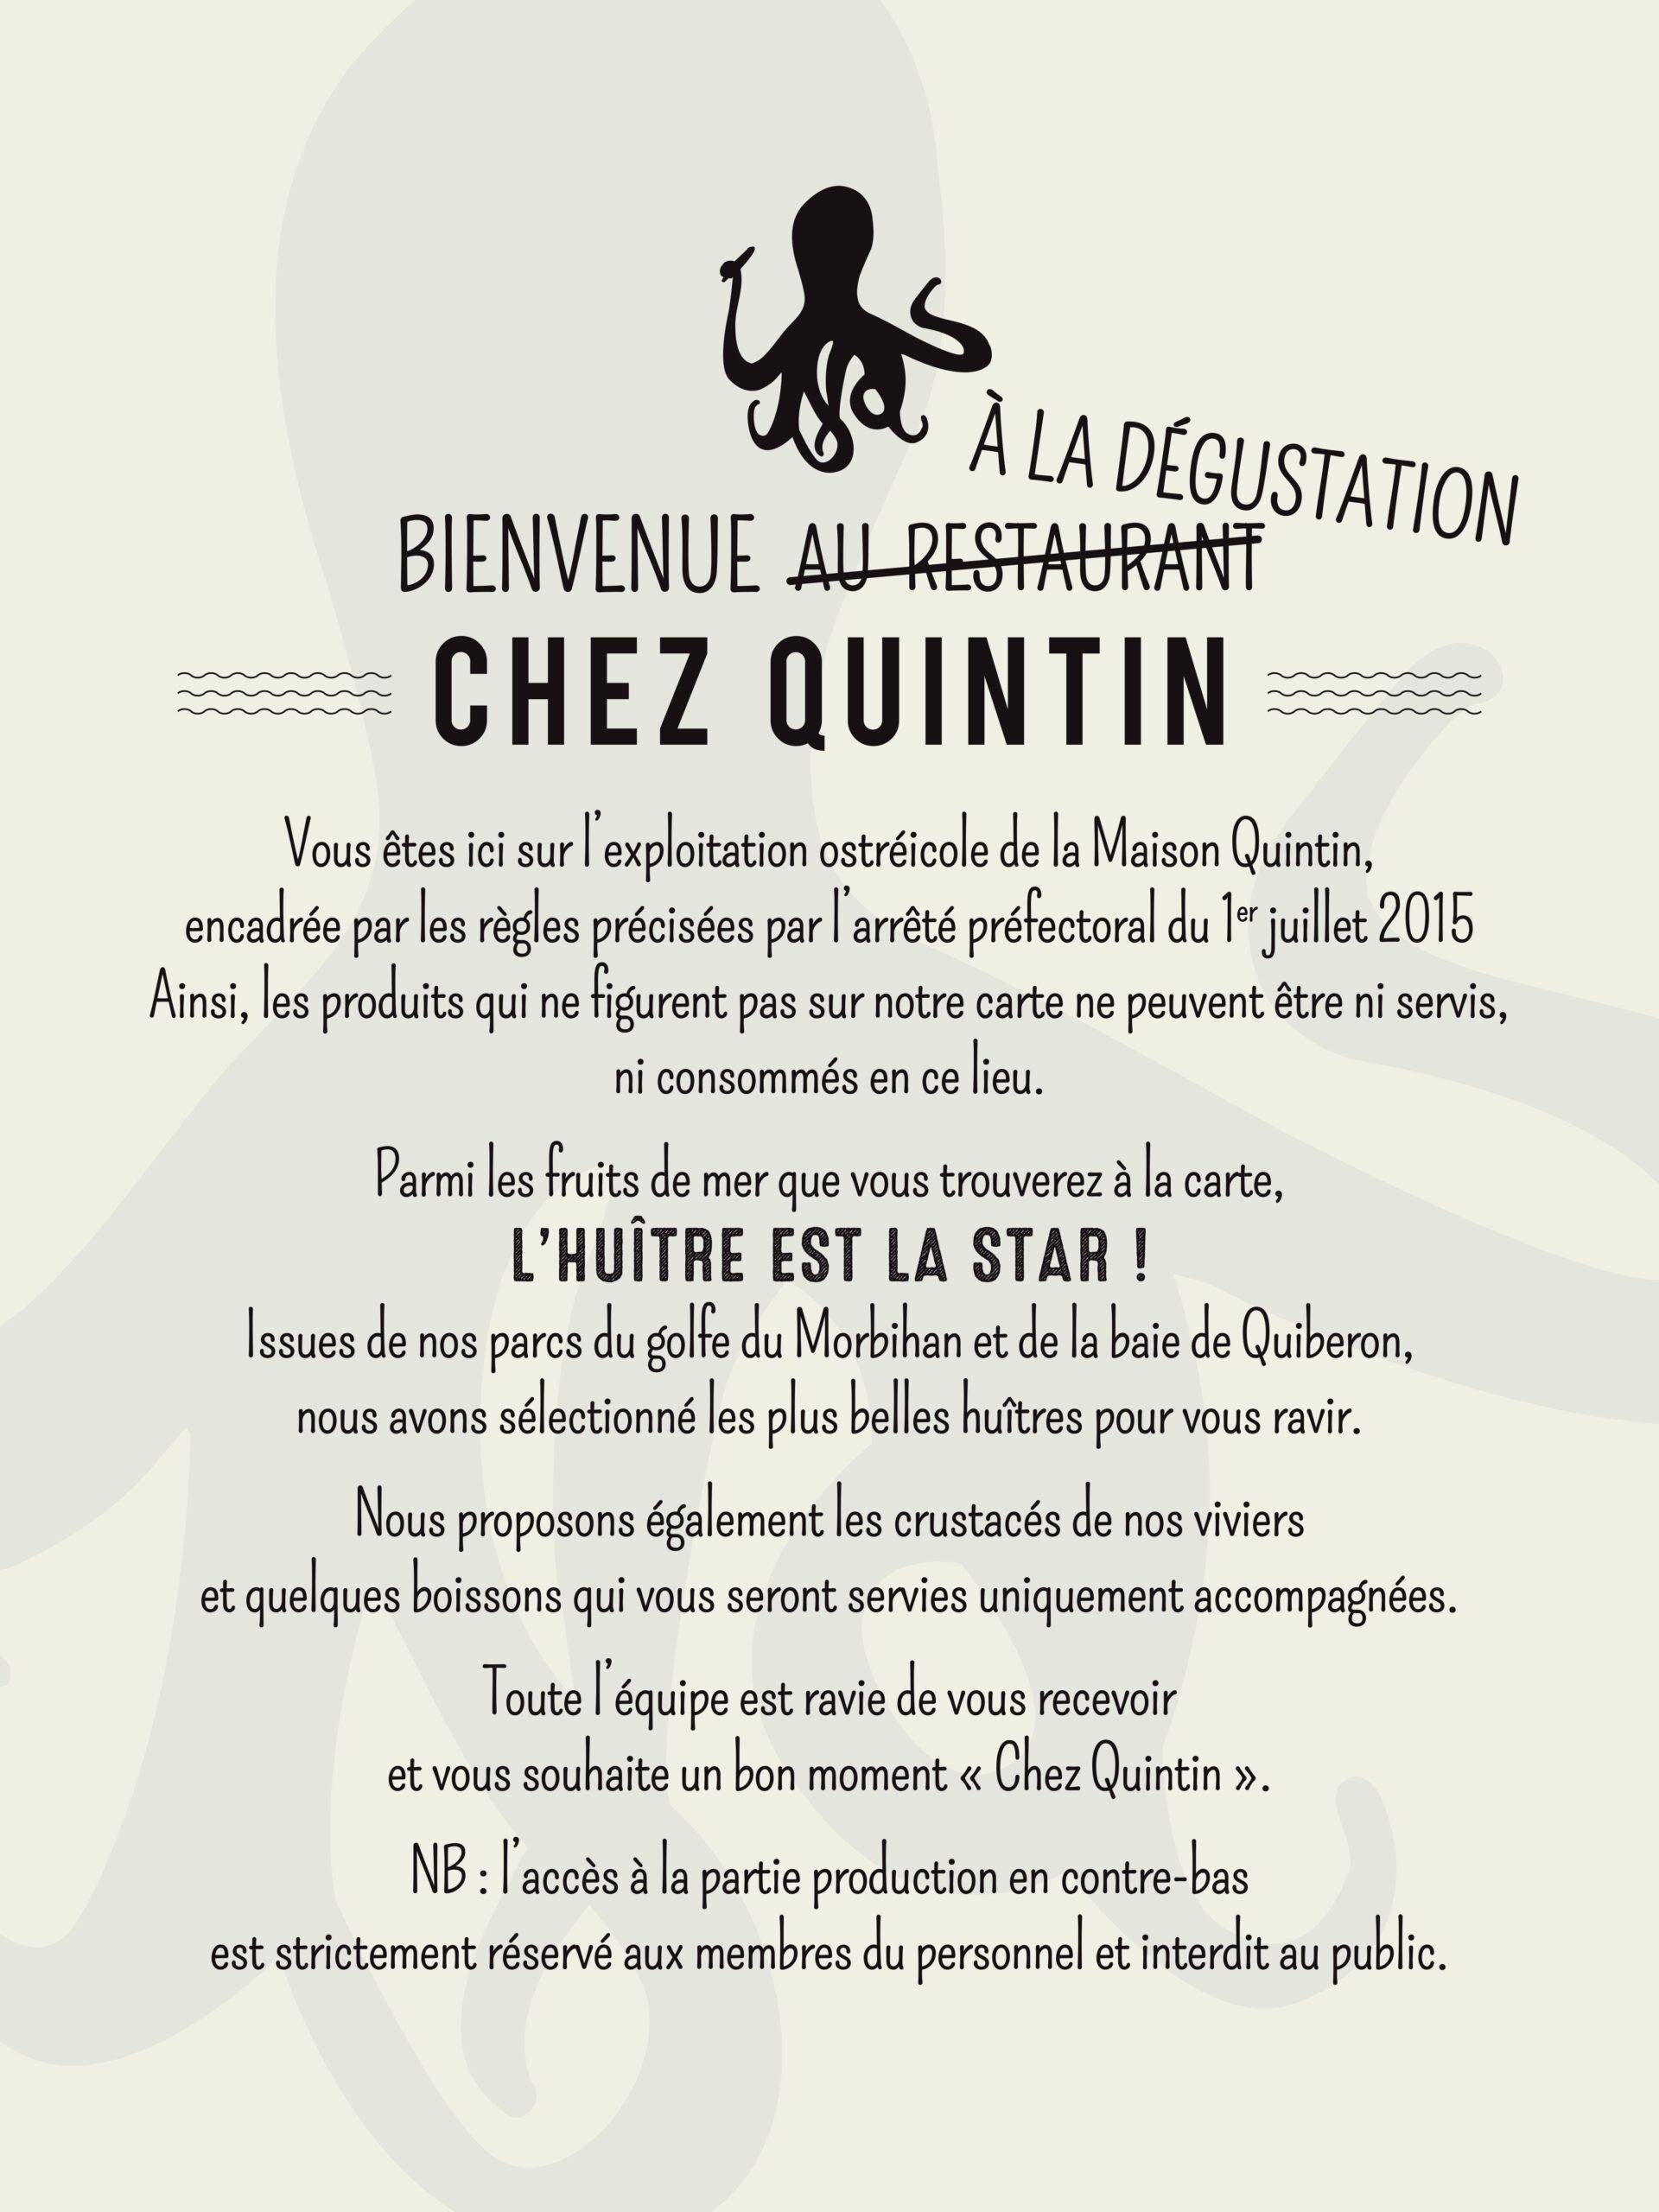 Panneau informatif " Chez Quintin"